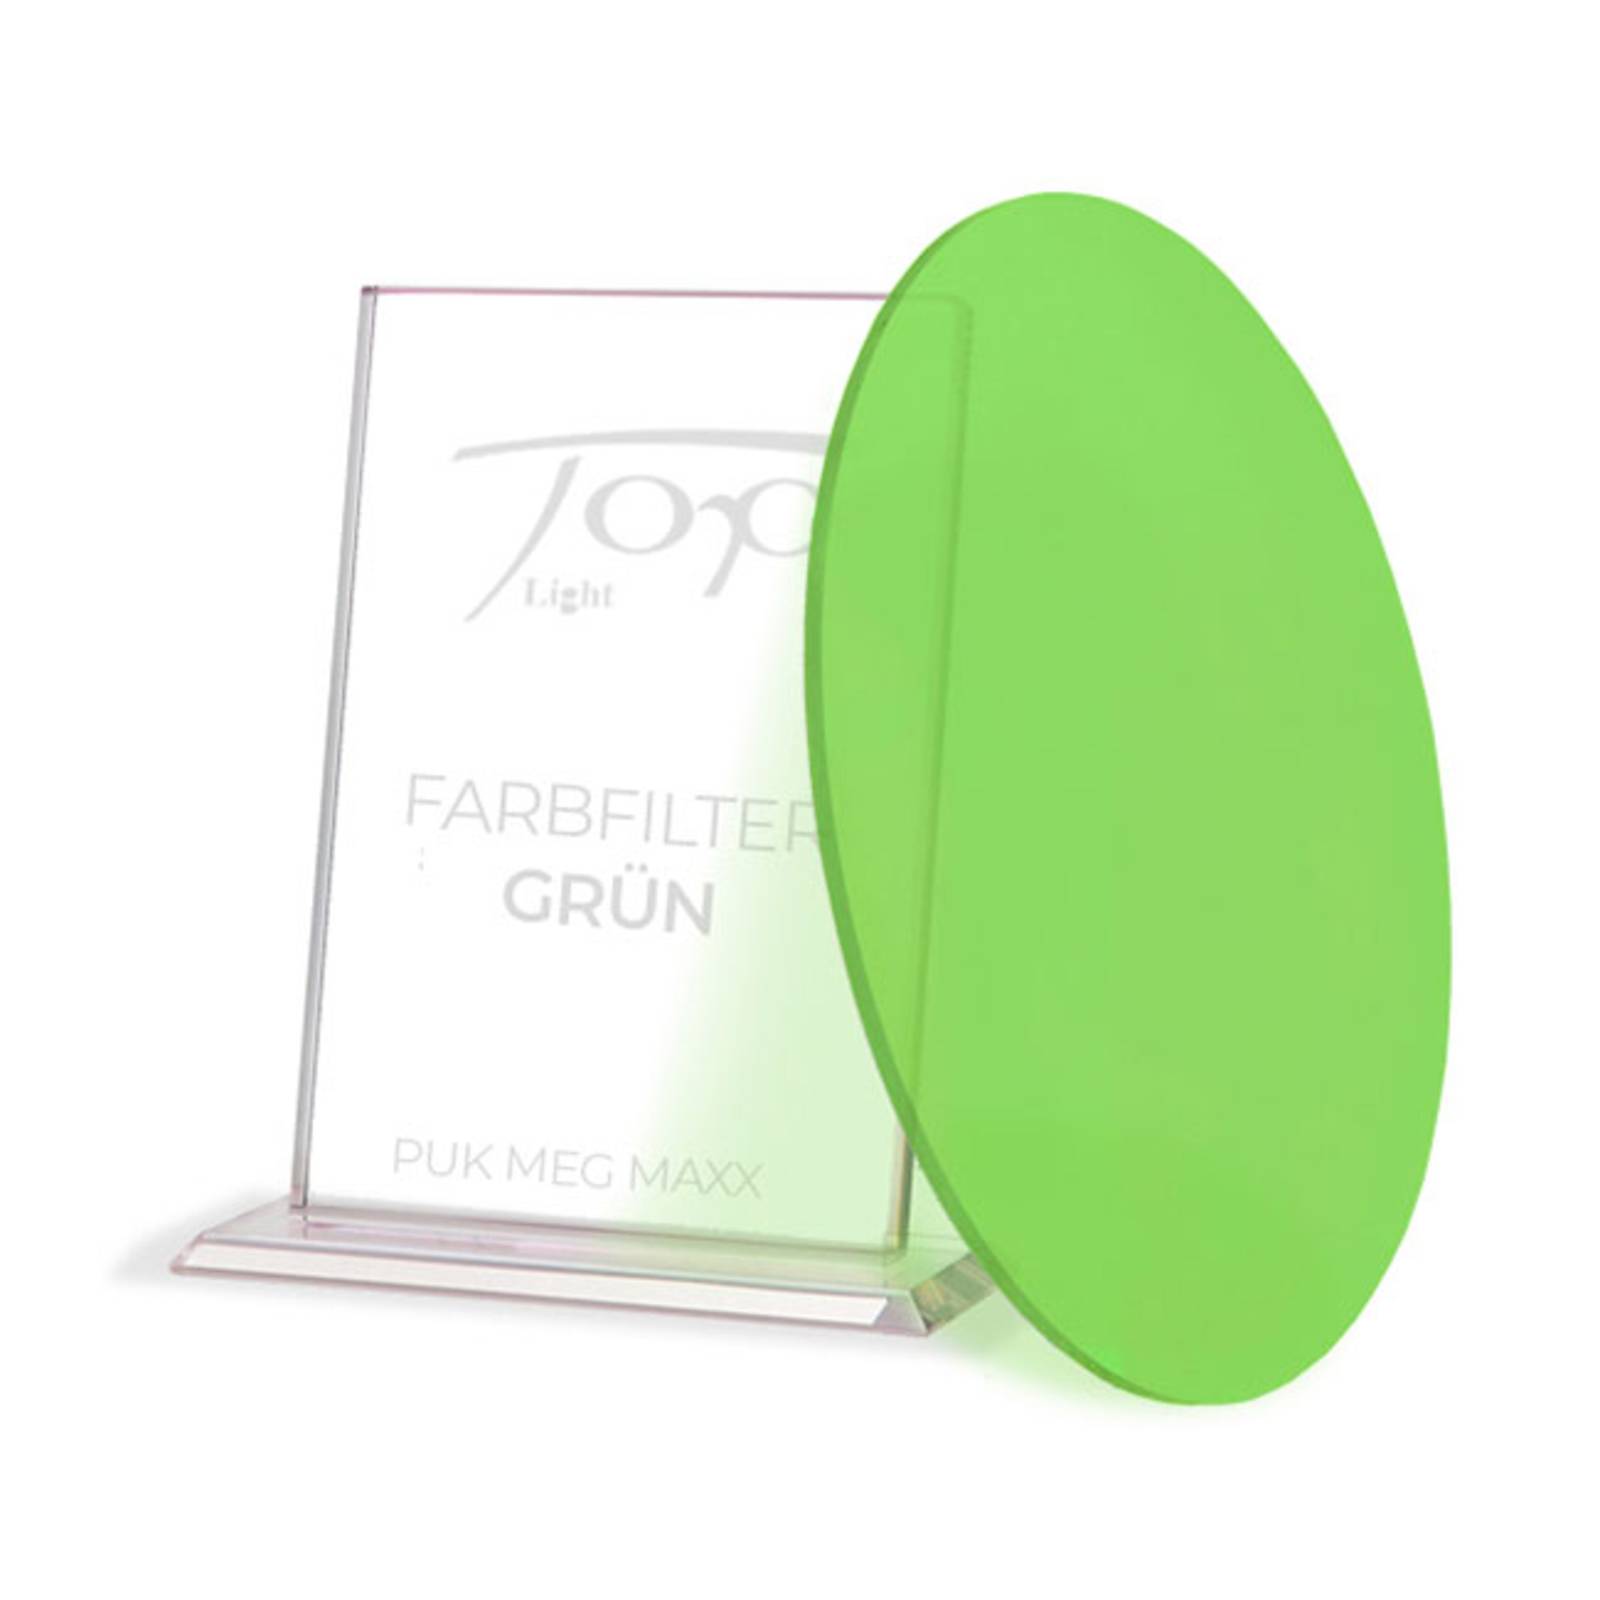 Top Light Farbfilter zur Leuchtenserie Puk Meg Maxx, grün